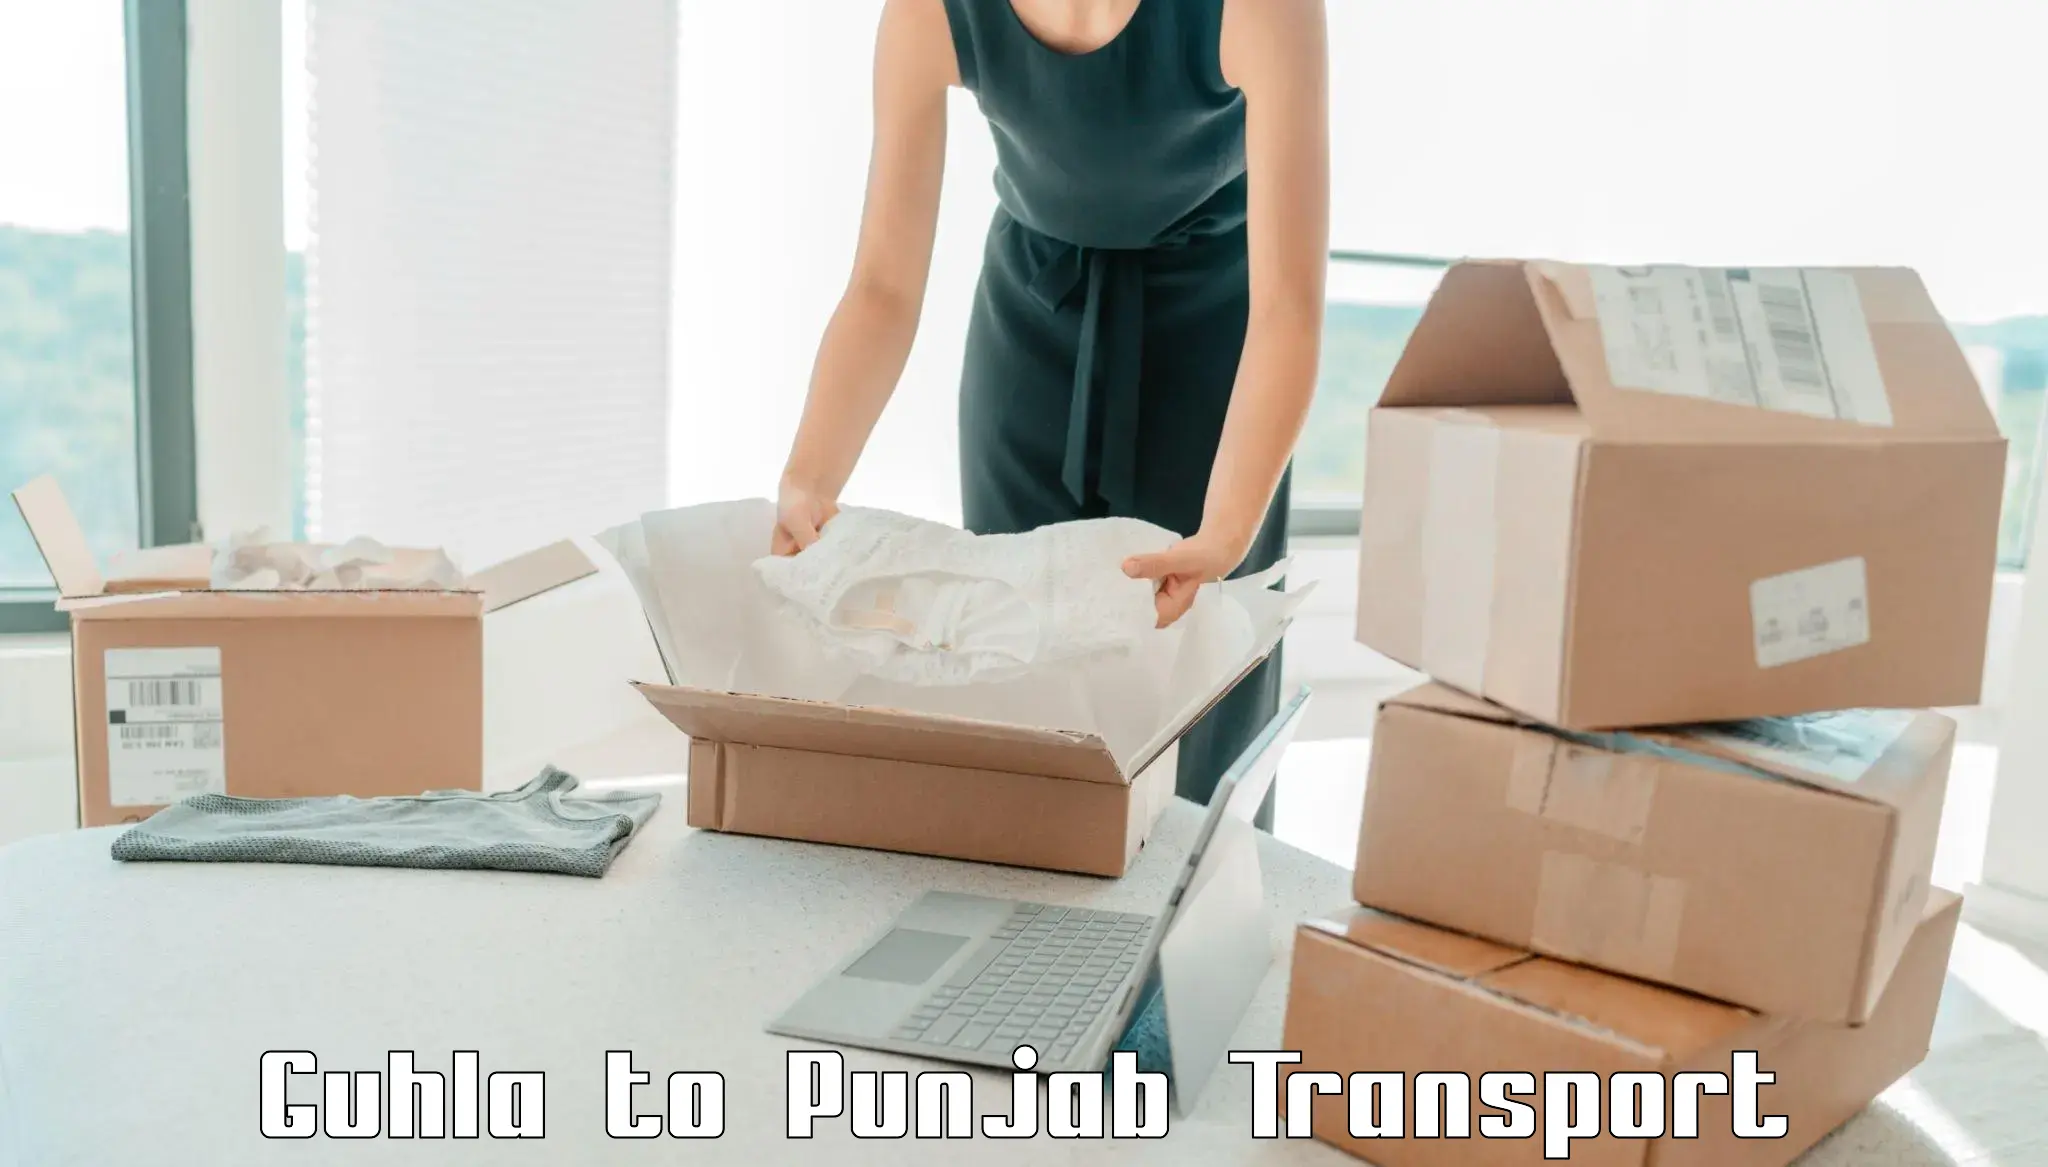 Furniture transport service Guhla to Punjab